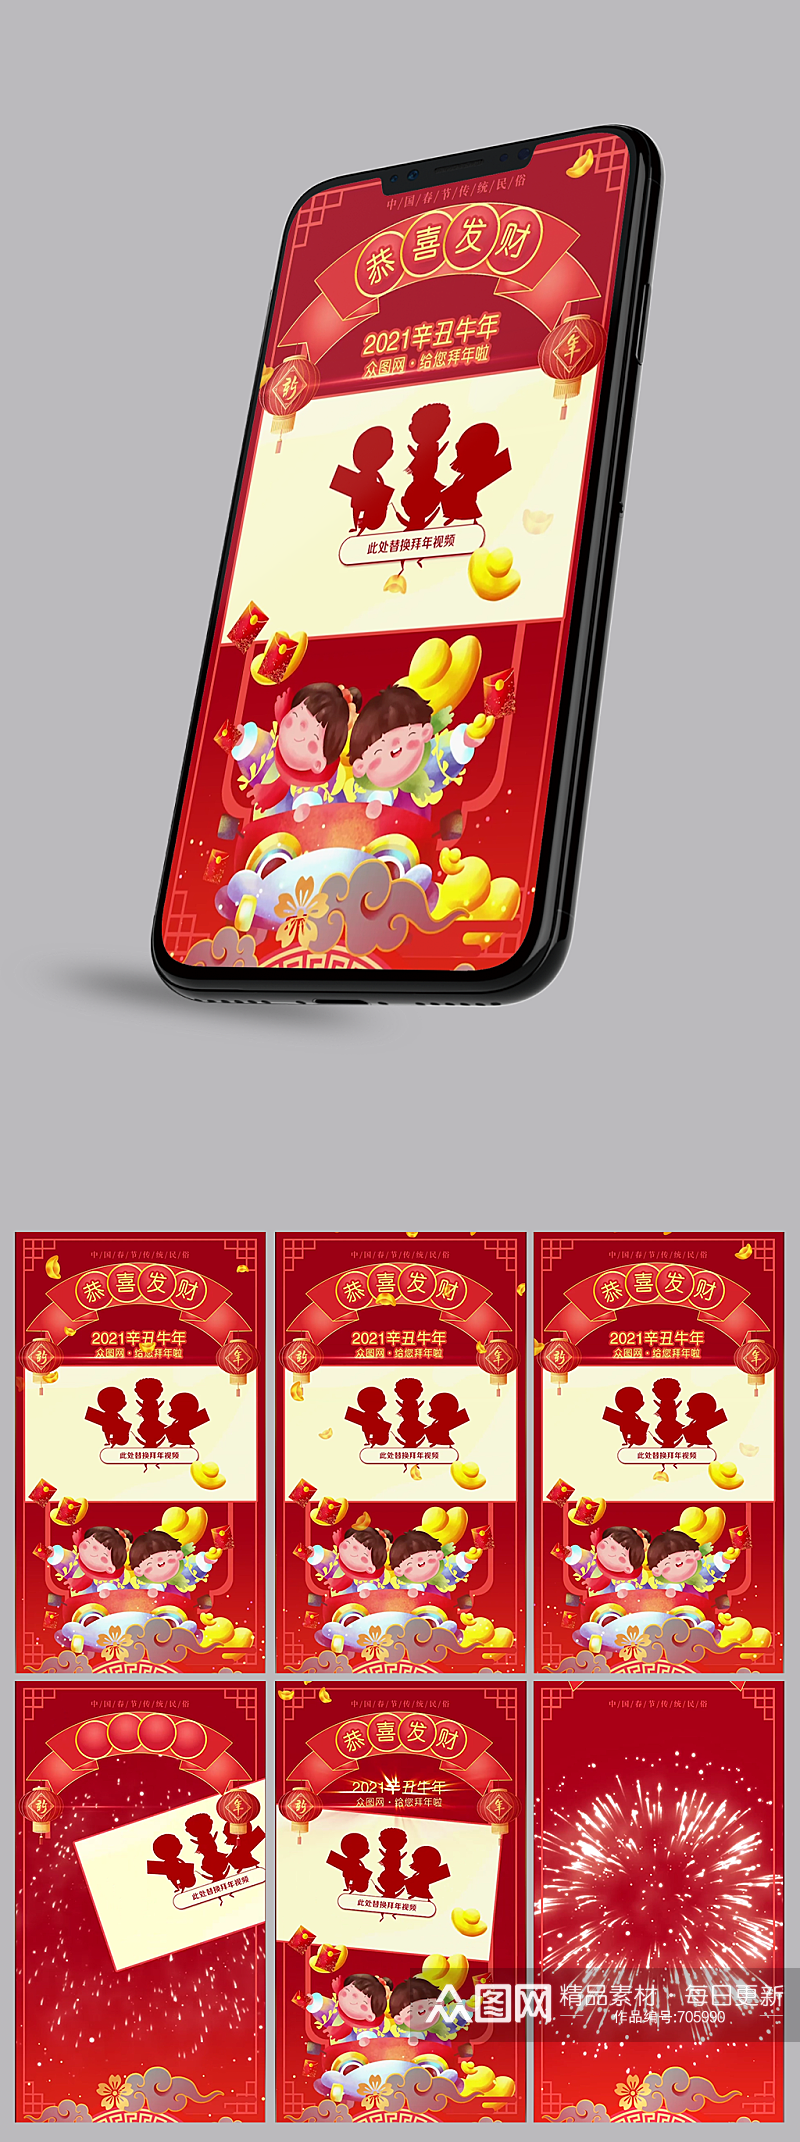 2021欢庆牛年朋友圈卡通祝福牛年企业人物手机竖版竖屏拜年免费视频片尾模板素材